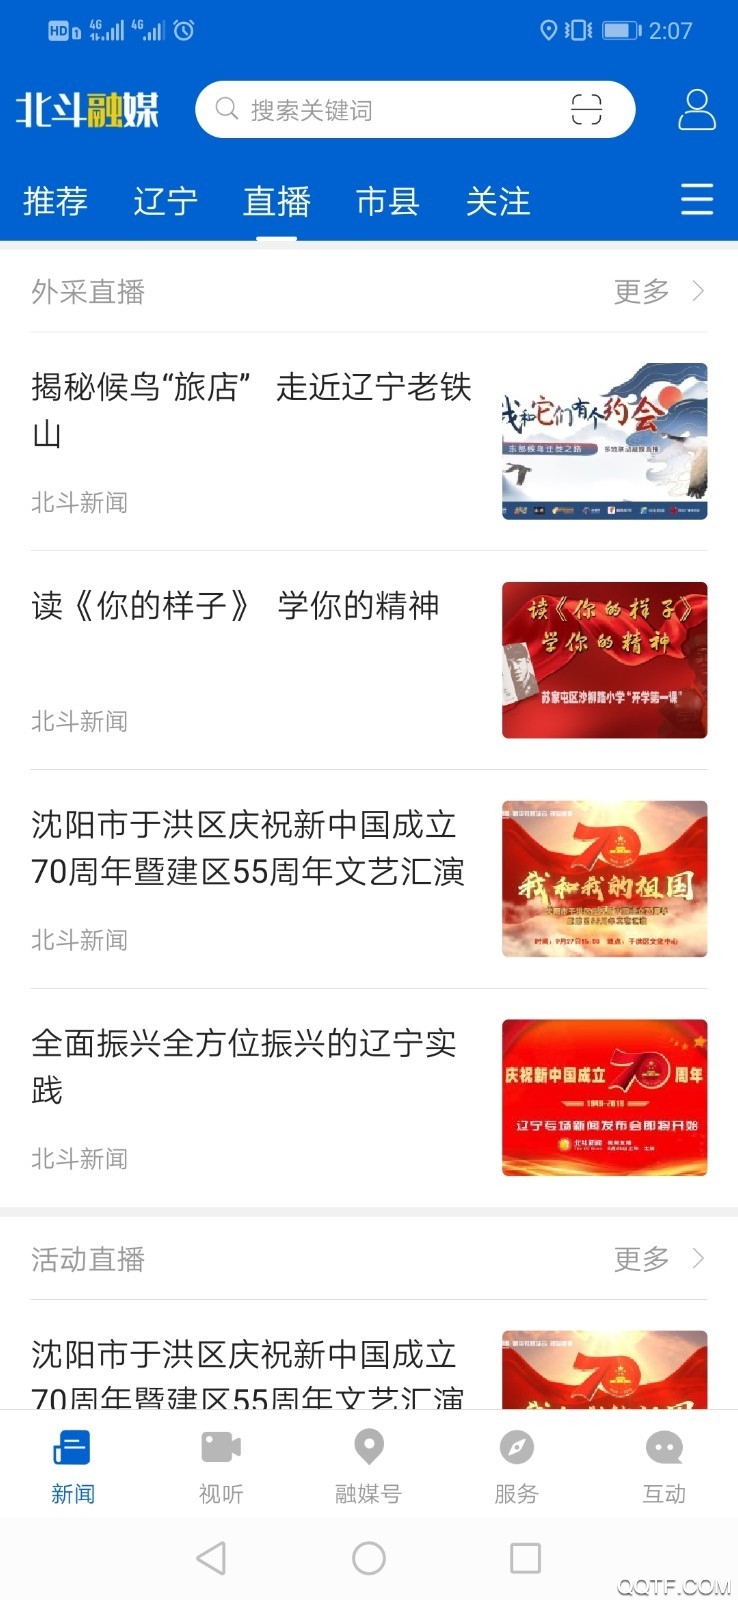 北斗融媒app直播最新版v1.5.3.8 官方版